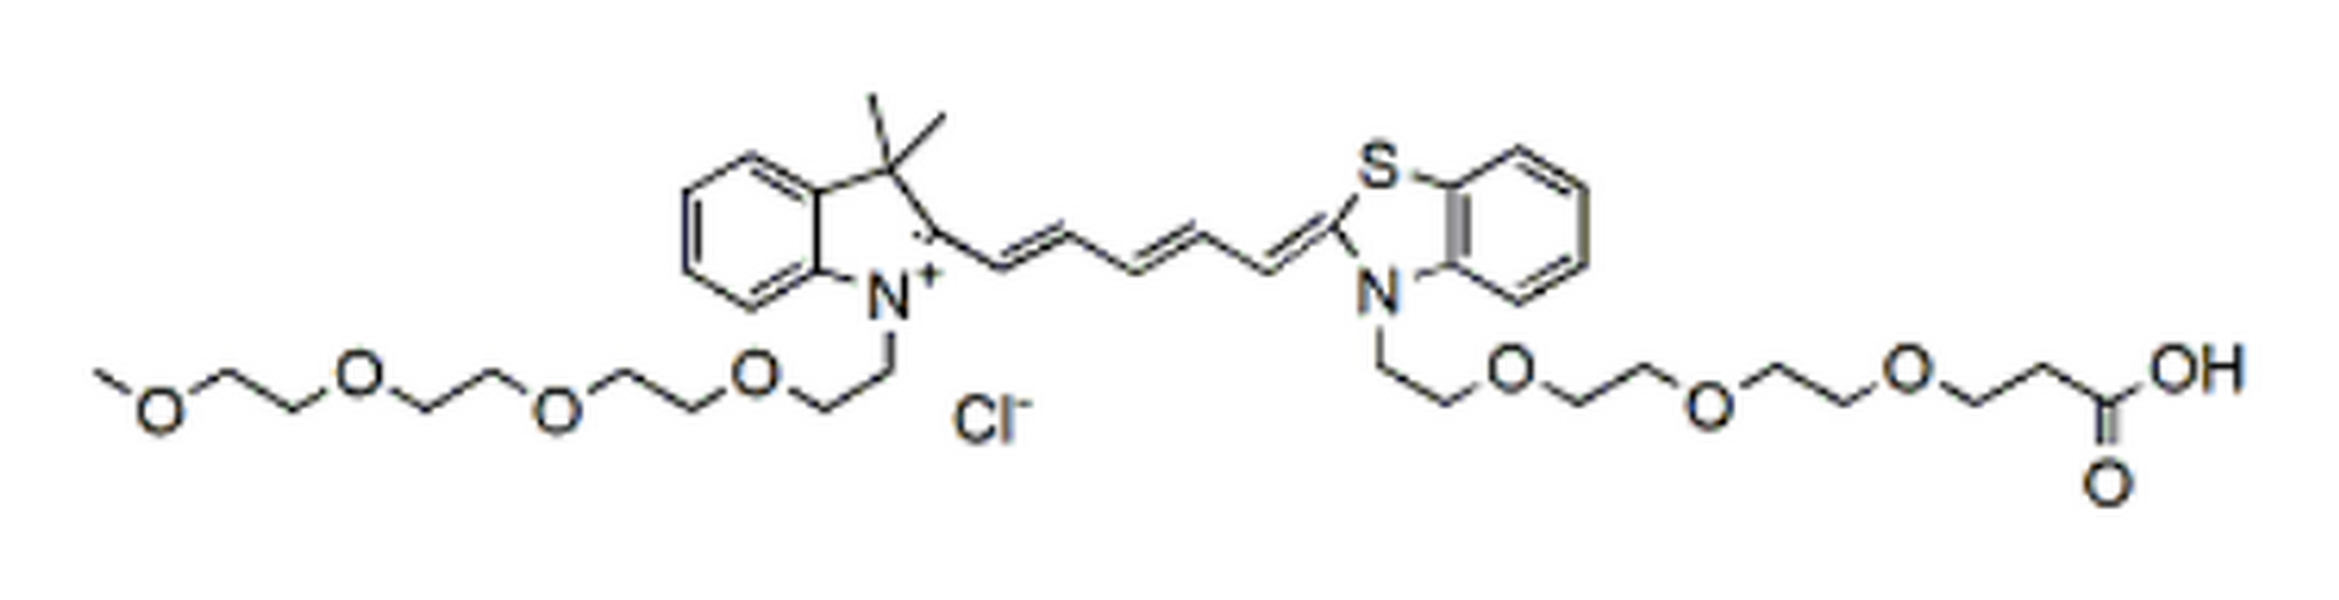 N-(m-PEG4)-33-Dimethyl-3H-indole-N'-(acid-PEG3)-Benzothiazole Cy5